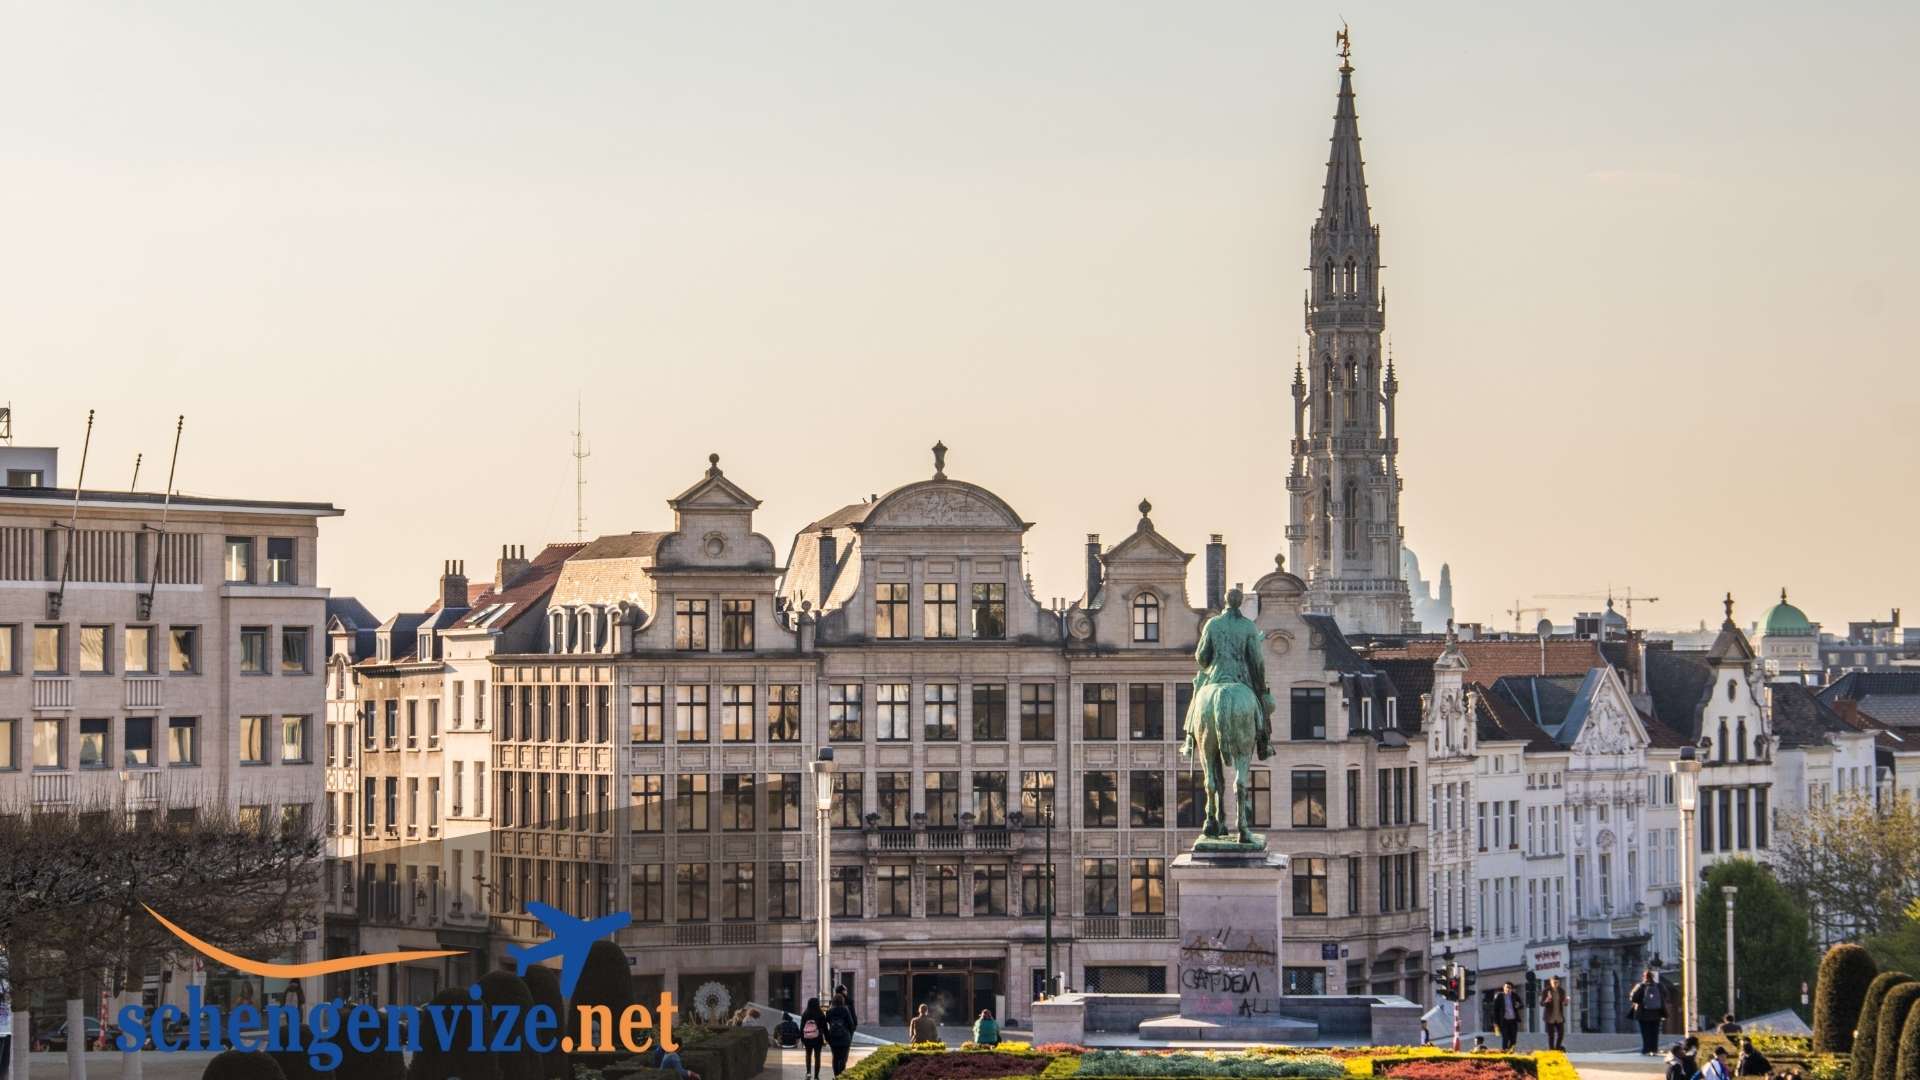 Belçika Vize Ücretini Öderken ve Başvuruda Bulunurken Dikkat Edilmesi Gerekenler